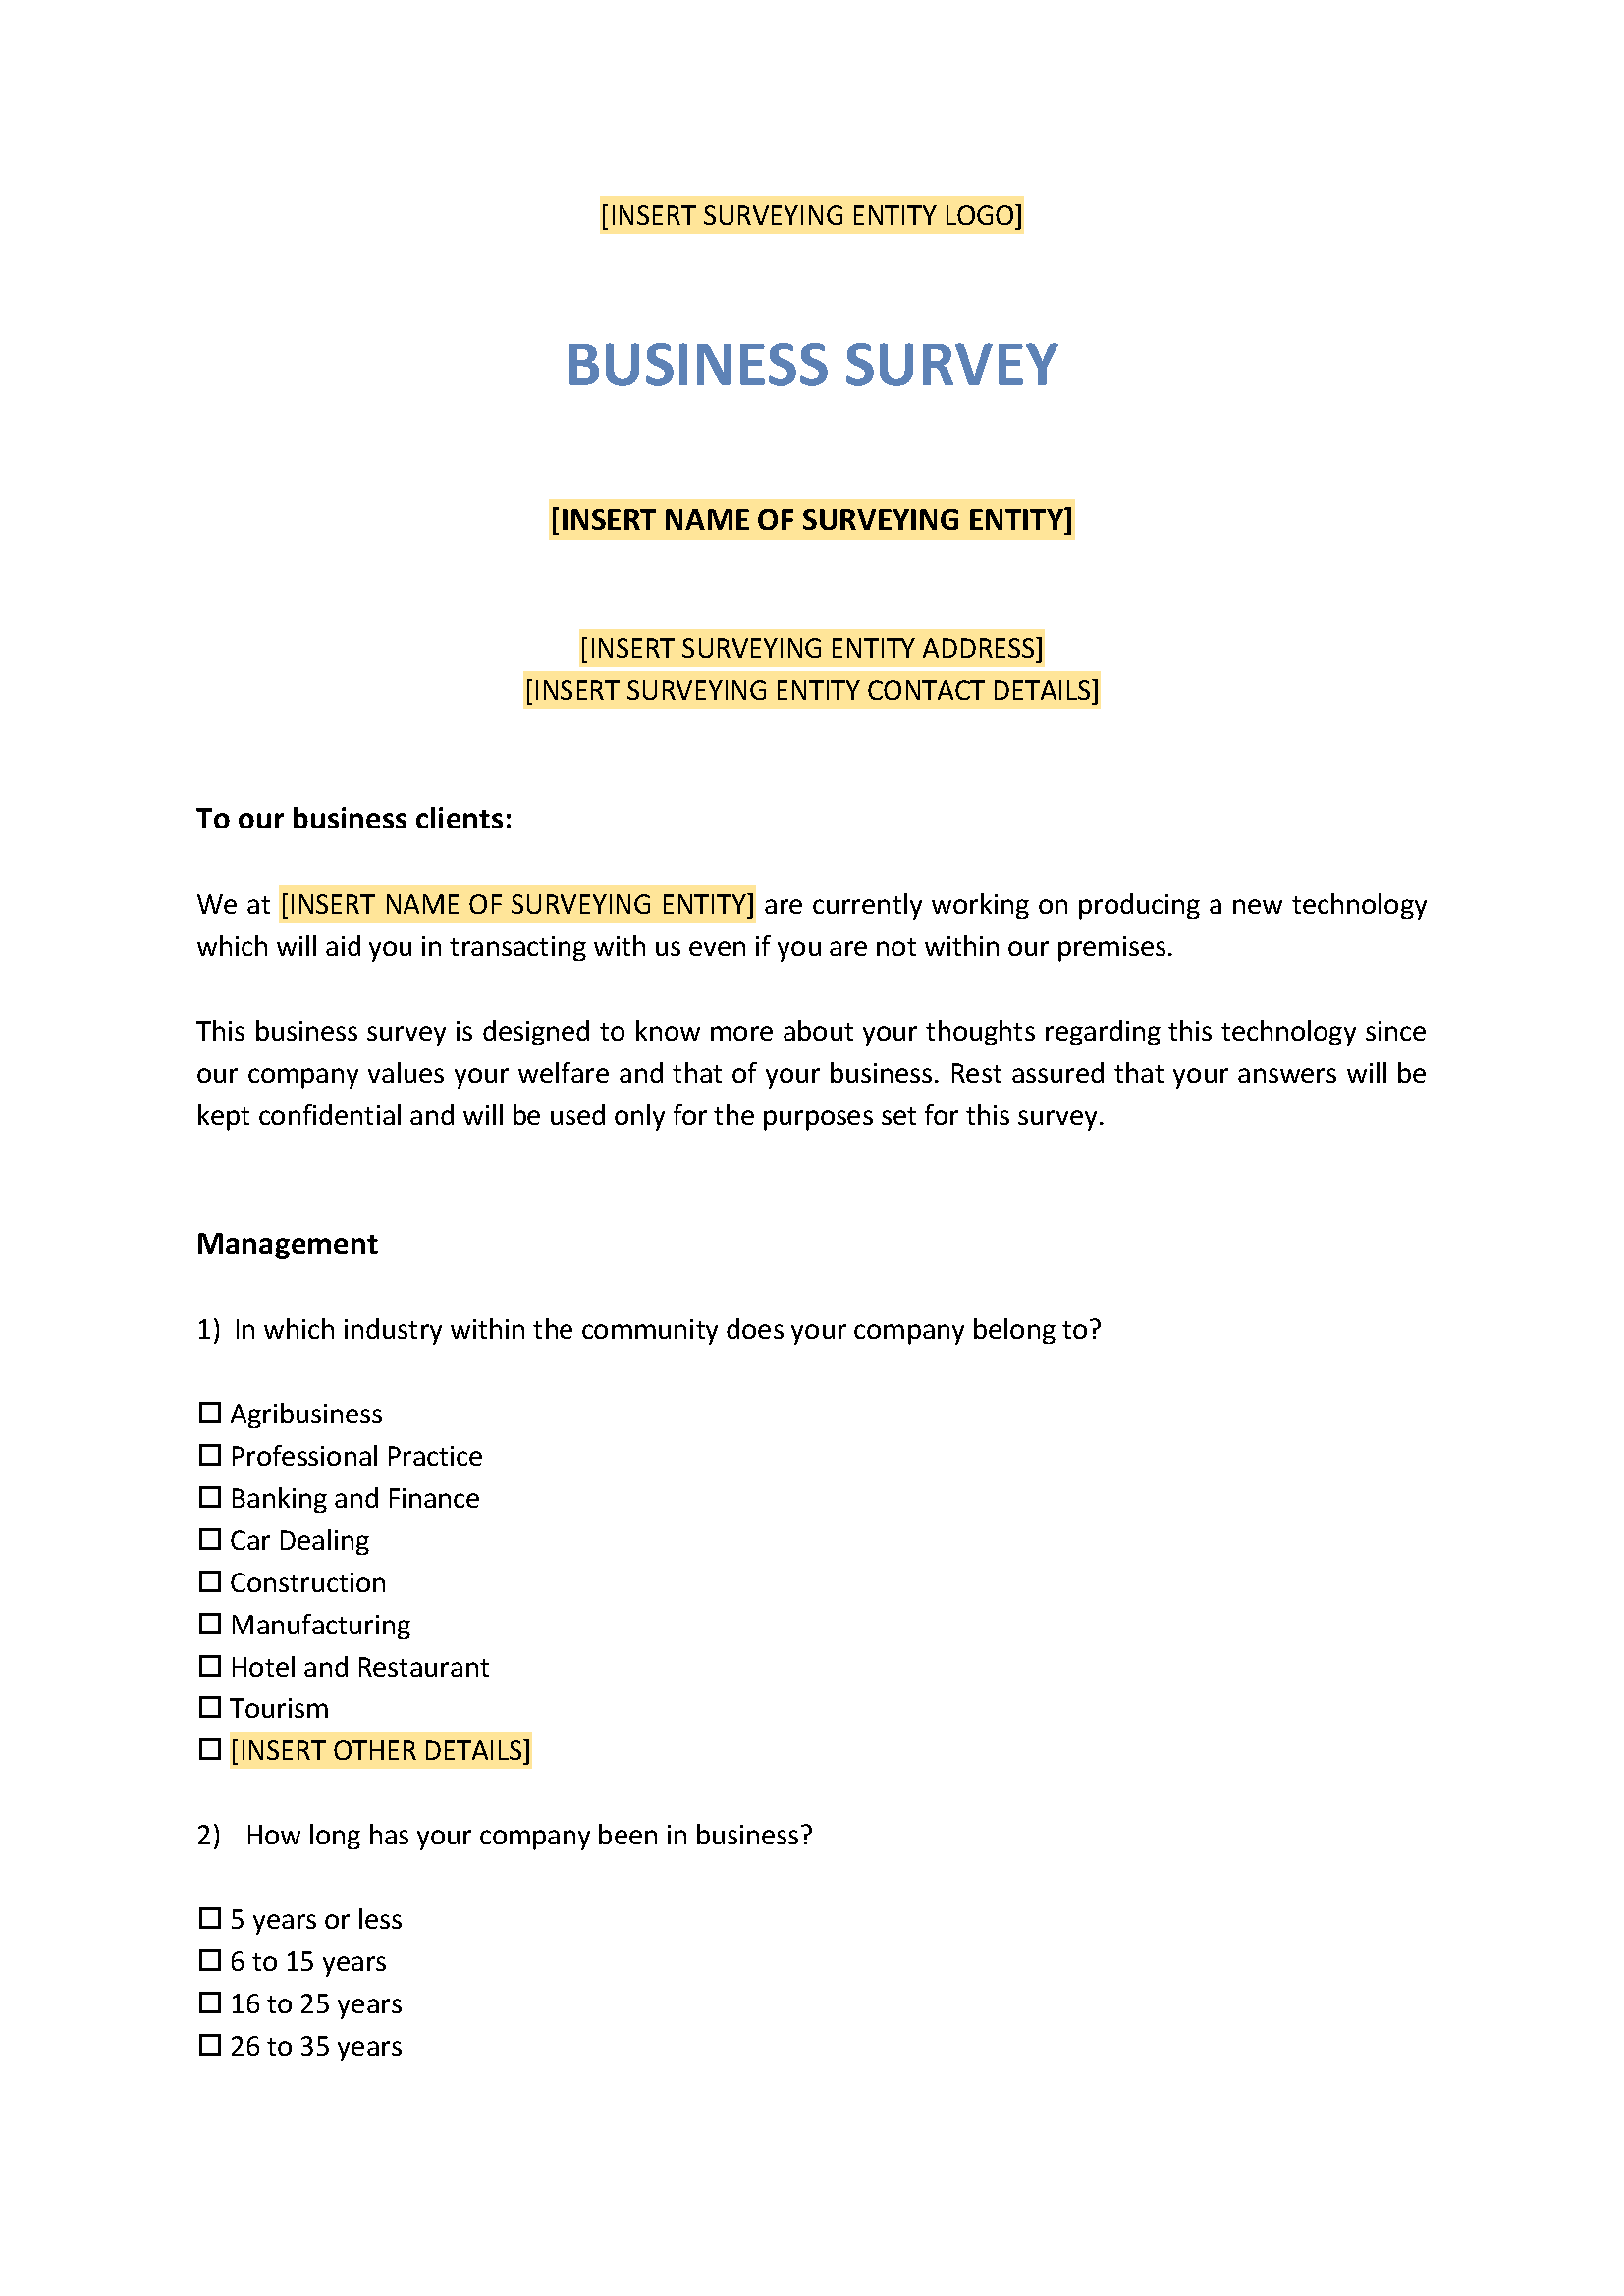 Business survey